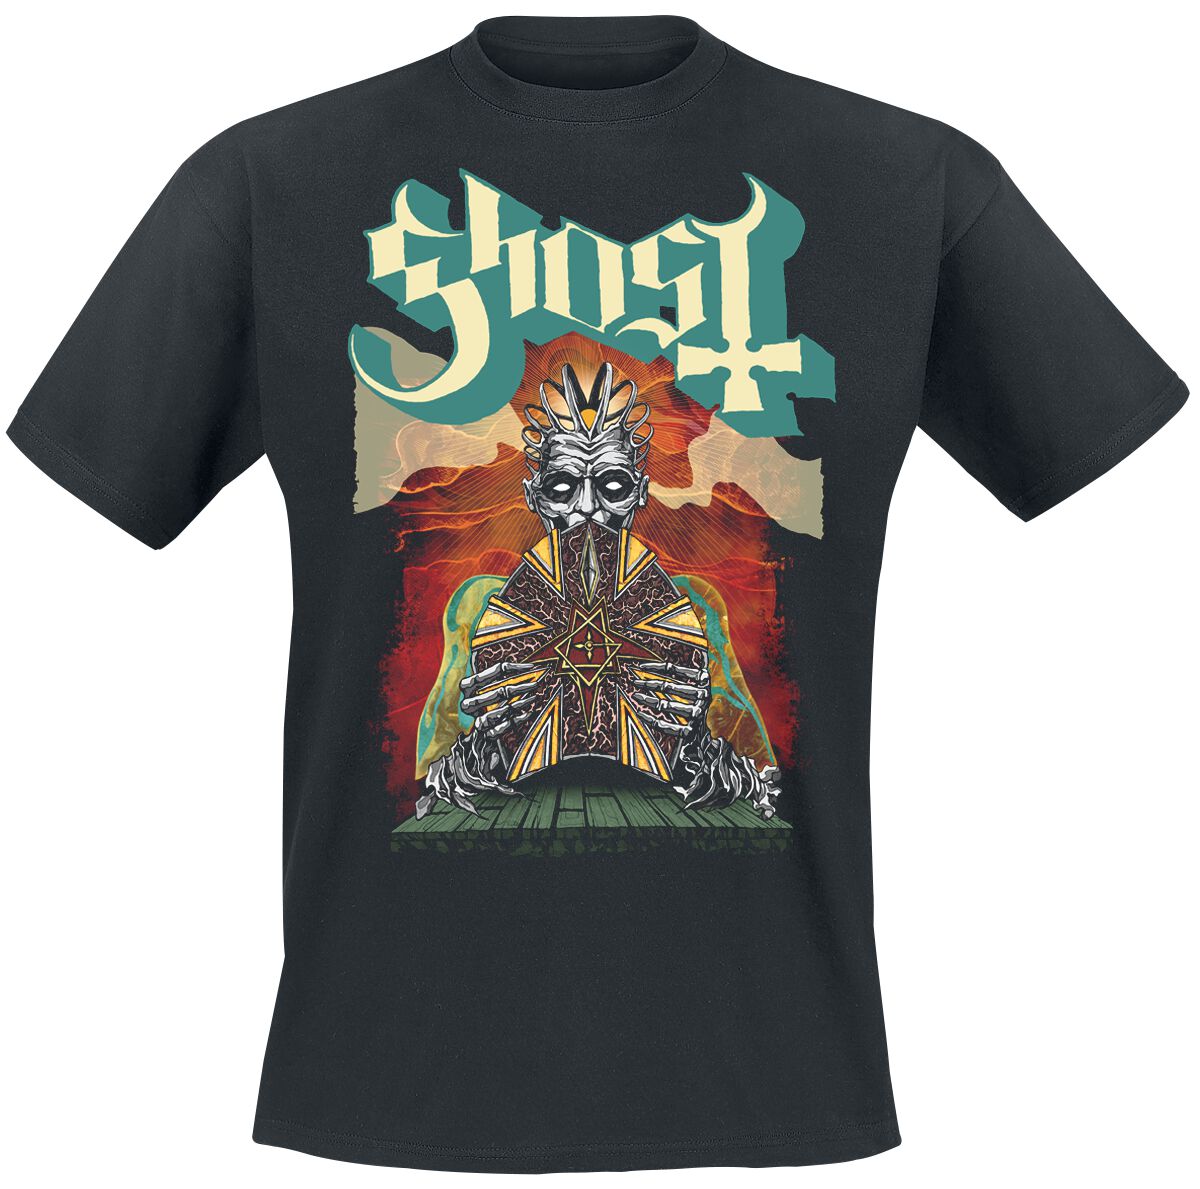 Ghost T-Shirt - Seven - CC - M - für Männer - Größe M - schwarz  - Lizenziertes Merchandise!